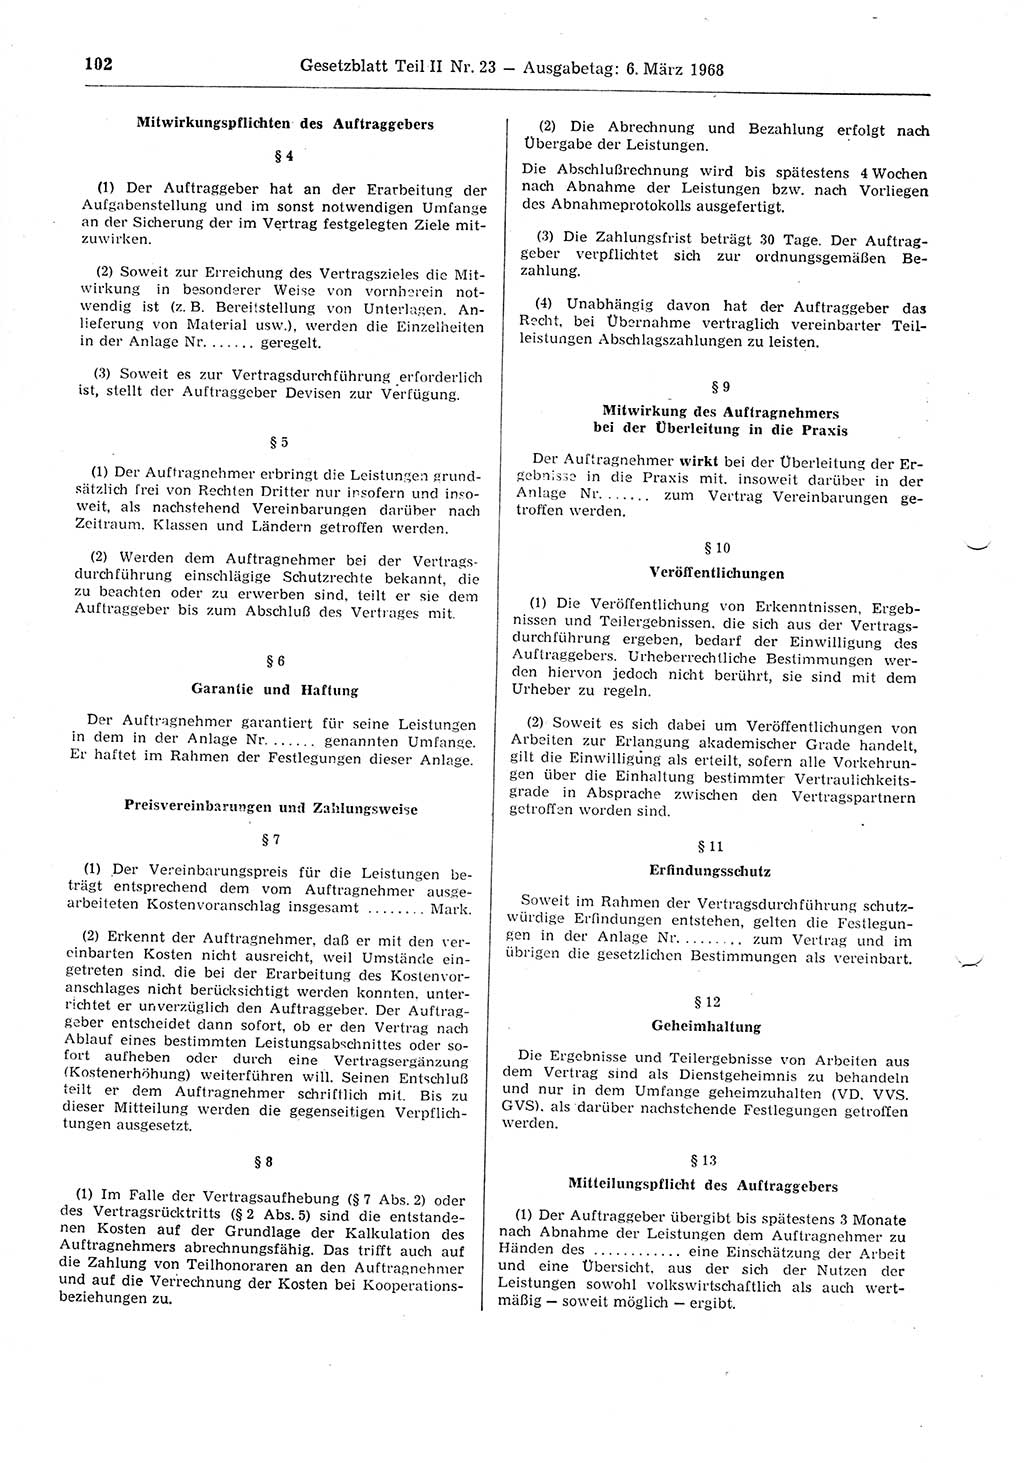 Gesetzblatt (GBl.) der Deutschen Demokratischen Republik (DDR) Teil ⅠⅠ 1968, Seite 102 (GBl. DDR ⅠⅠ 1968, S. 102)